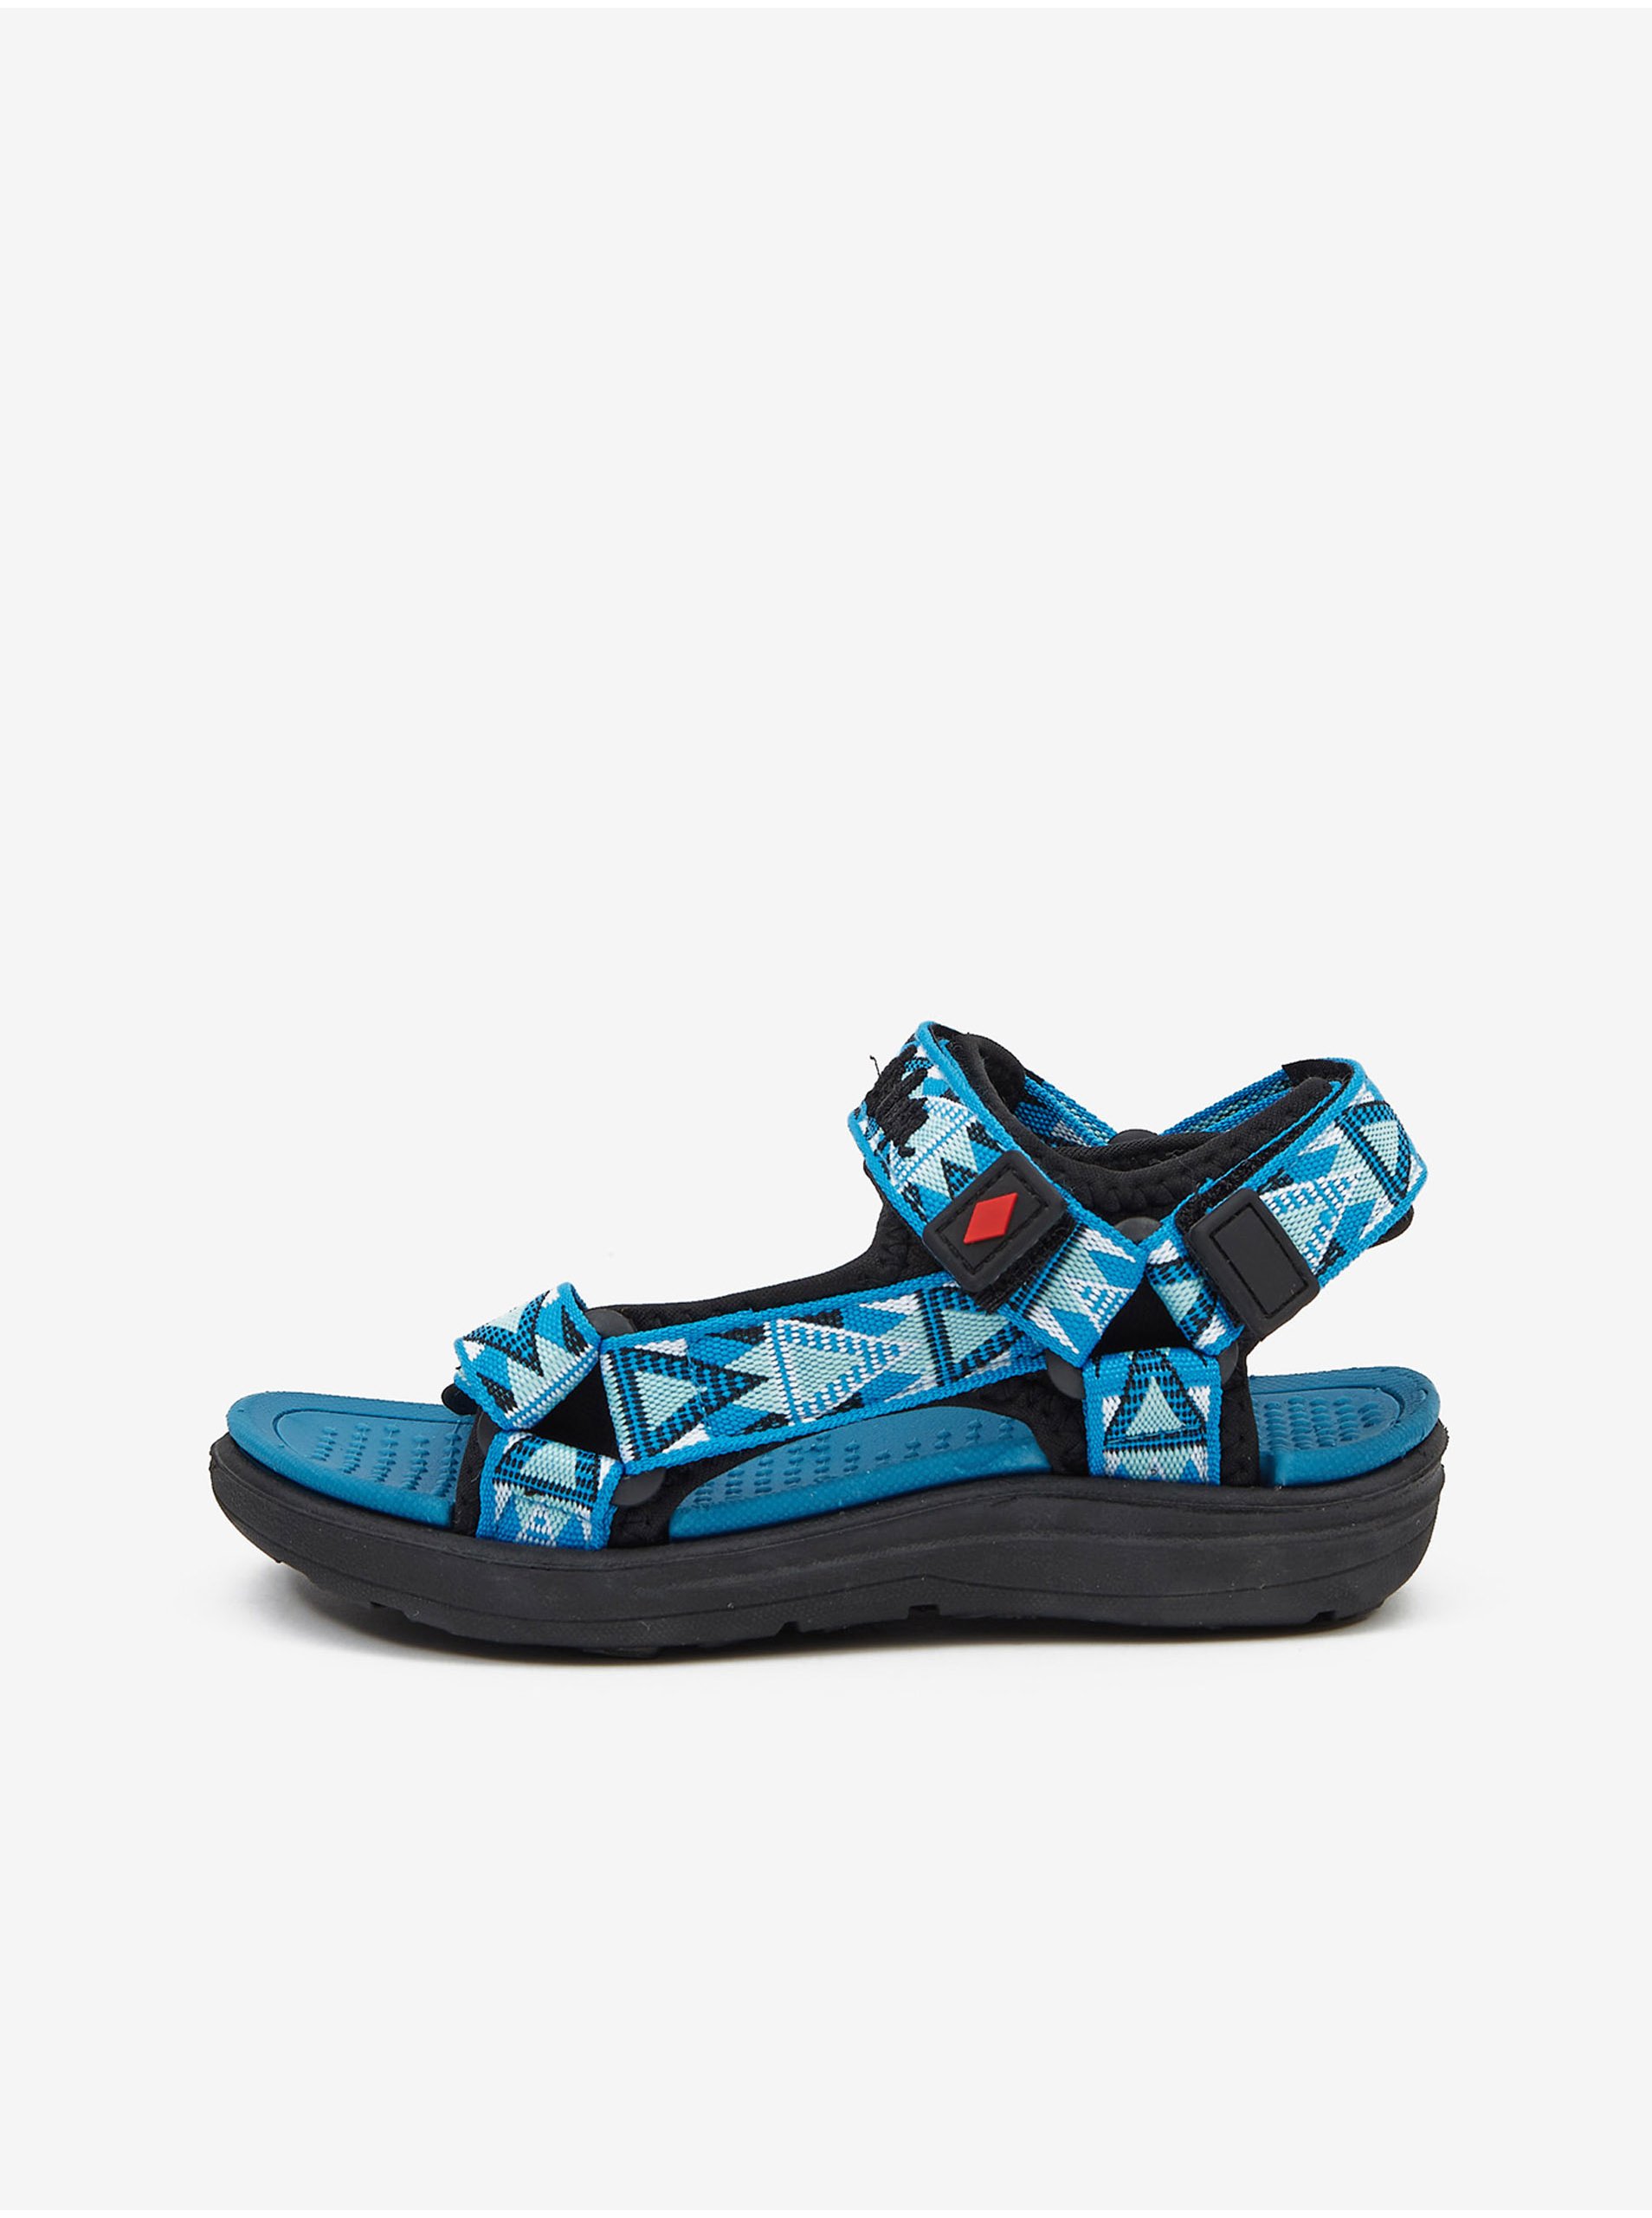 E-shop Modré chlapecké vzorované sandály Lee Cooper